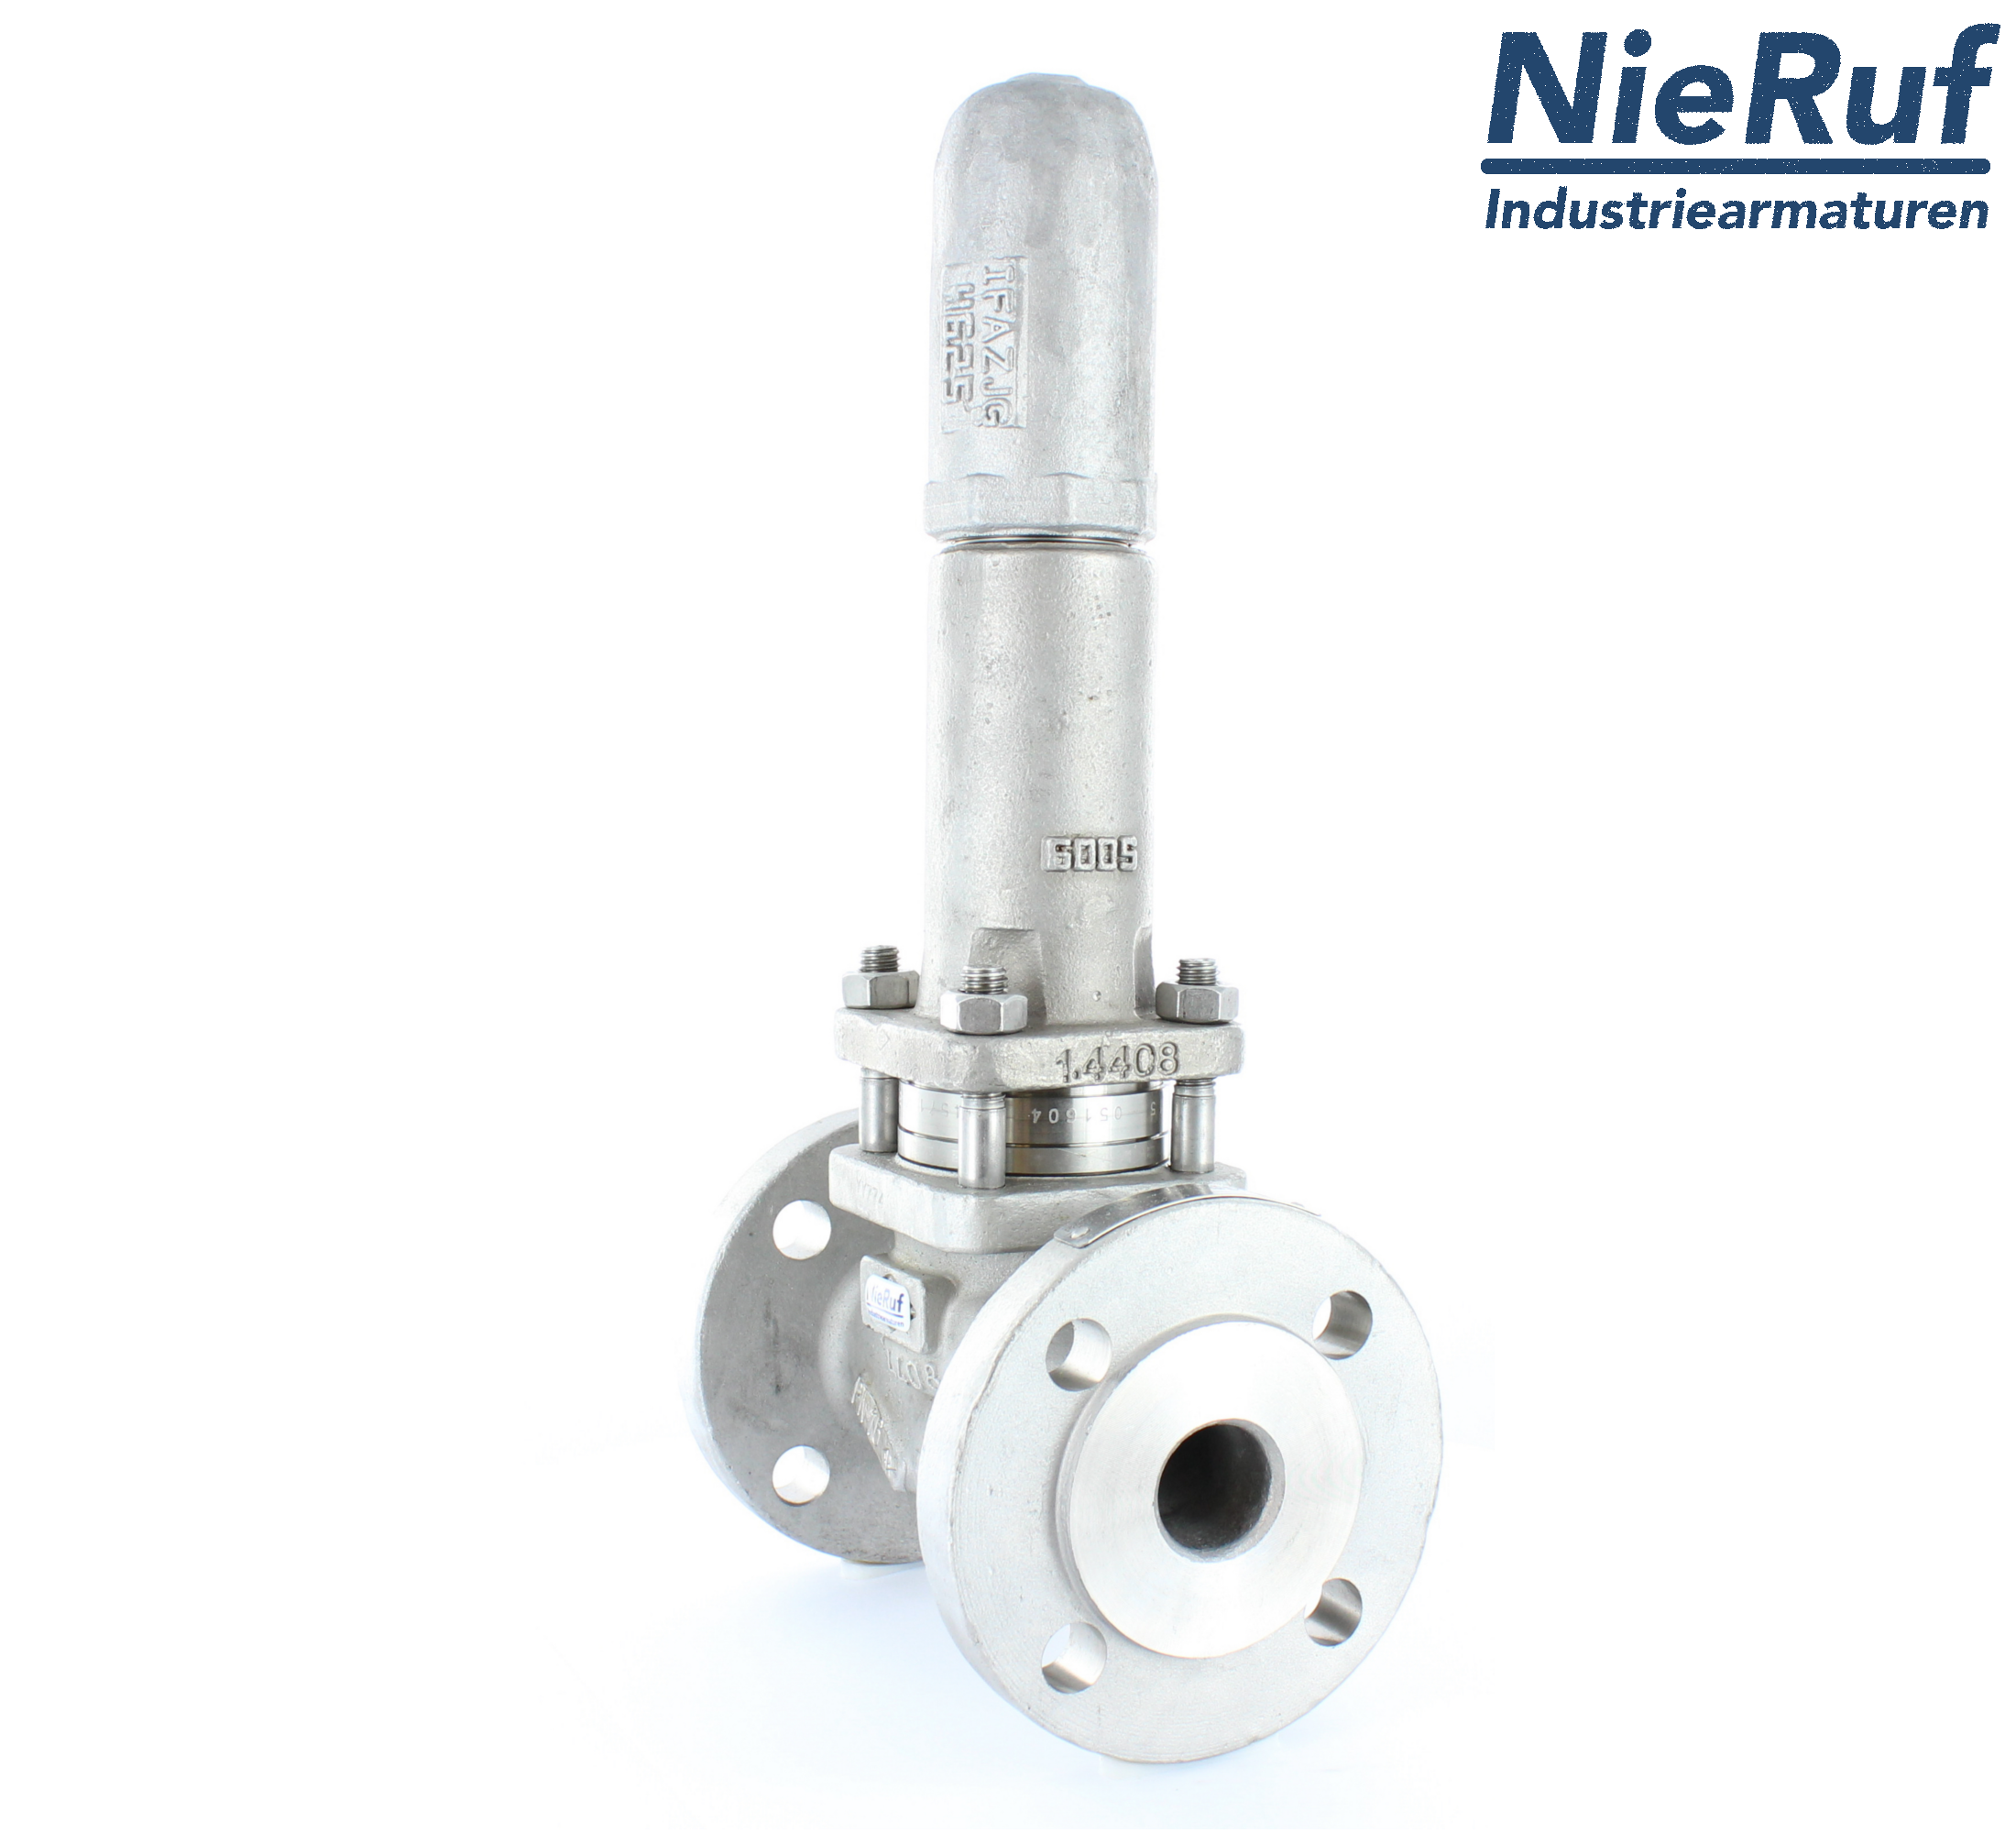 piston overflow valve DN 50 UV13 cast iron 1.0619+N 1,0 - 3,0 bar